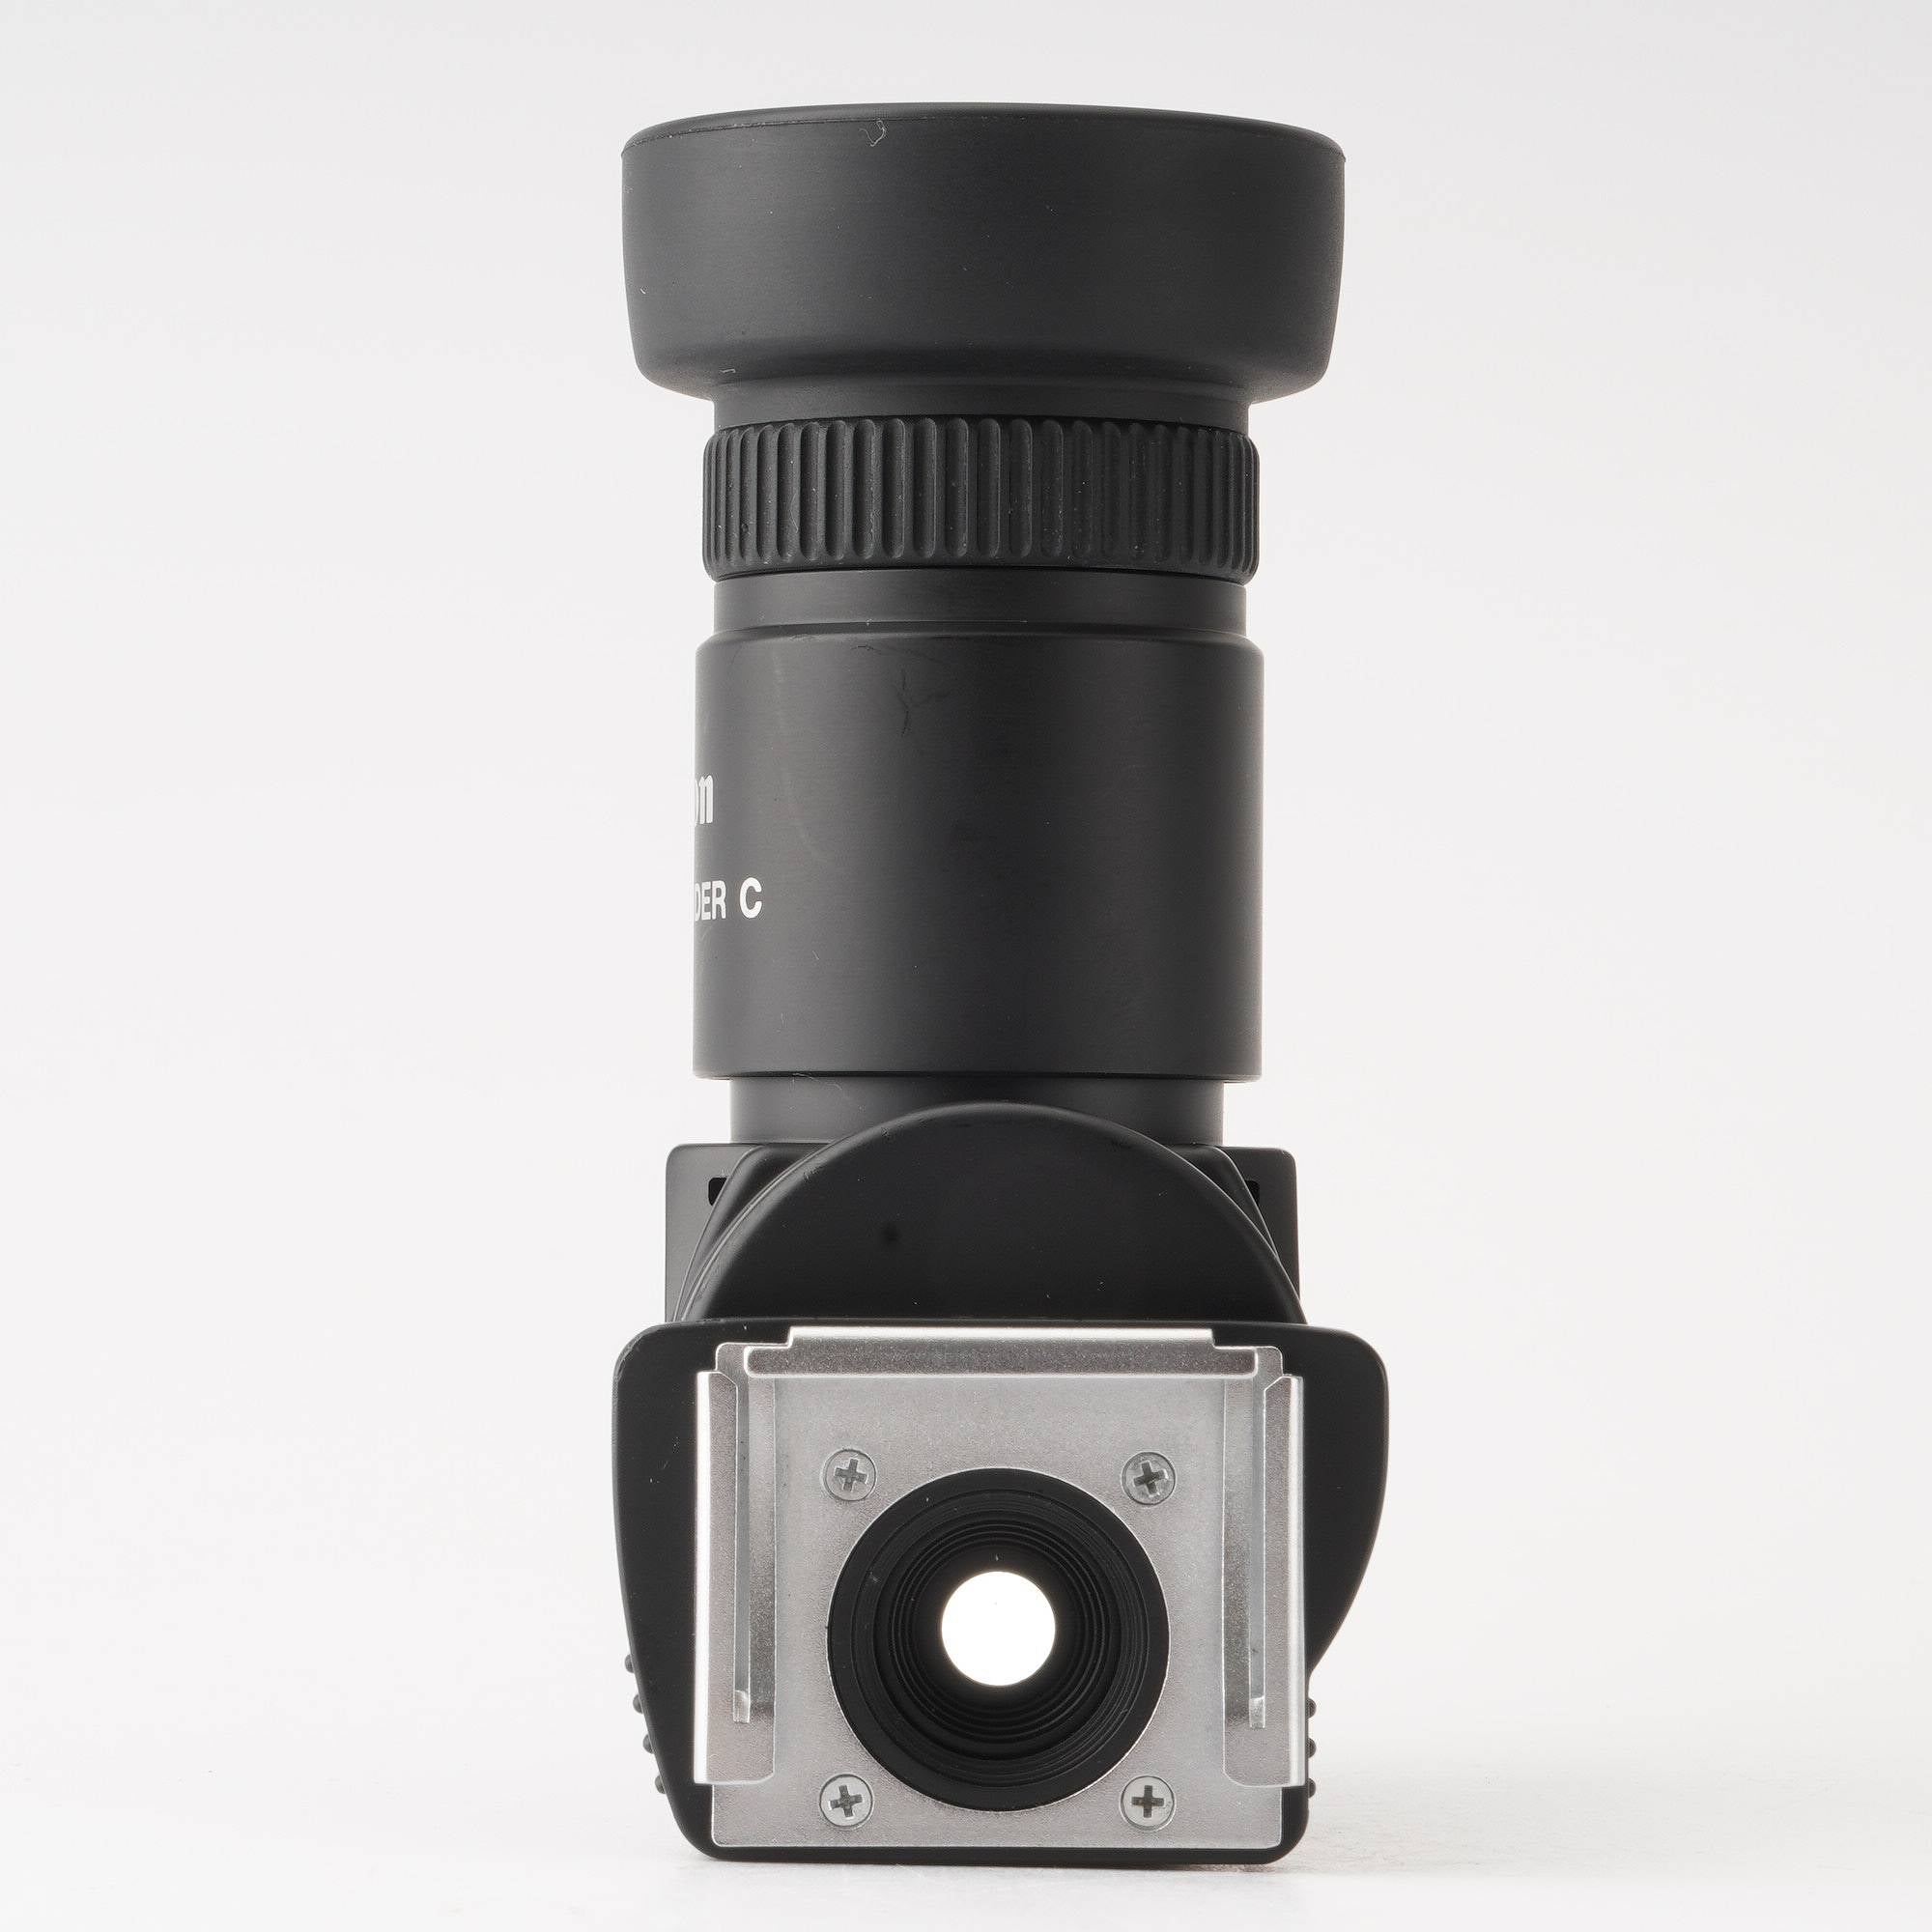 キャノン canon アングルファインダーC (028) - カメラ、光学機器